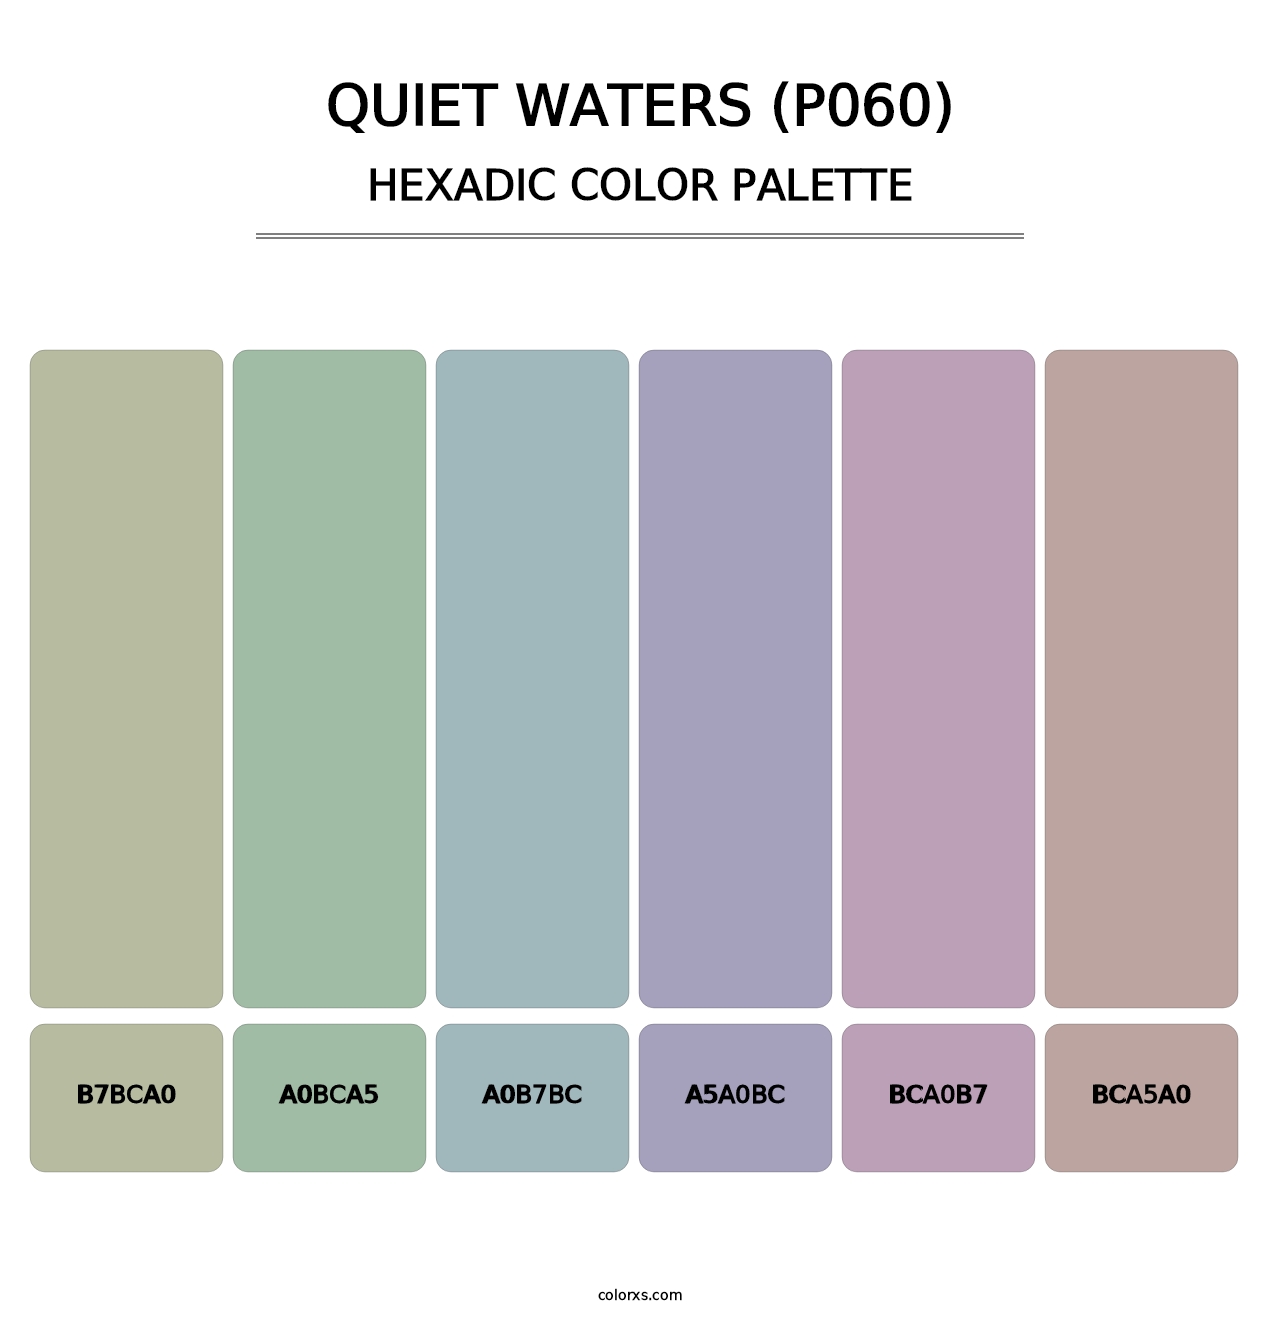 Quiet Waters (P060) - Hexadic Color Palette